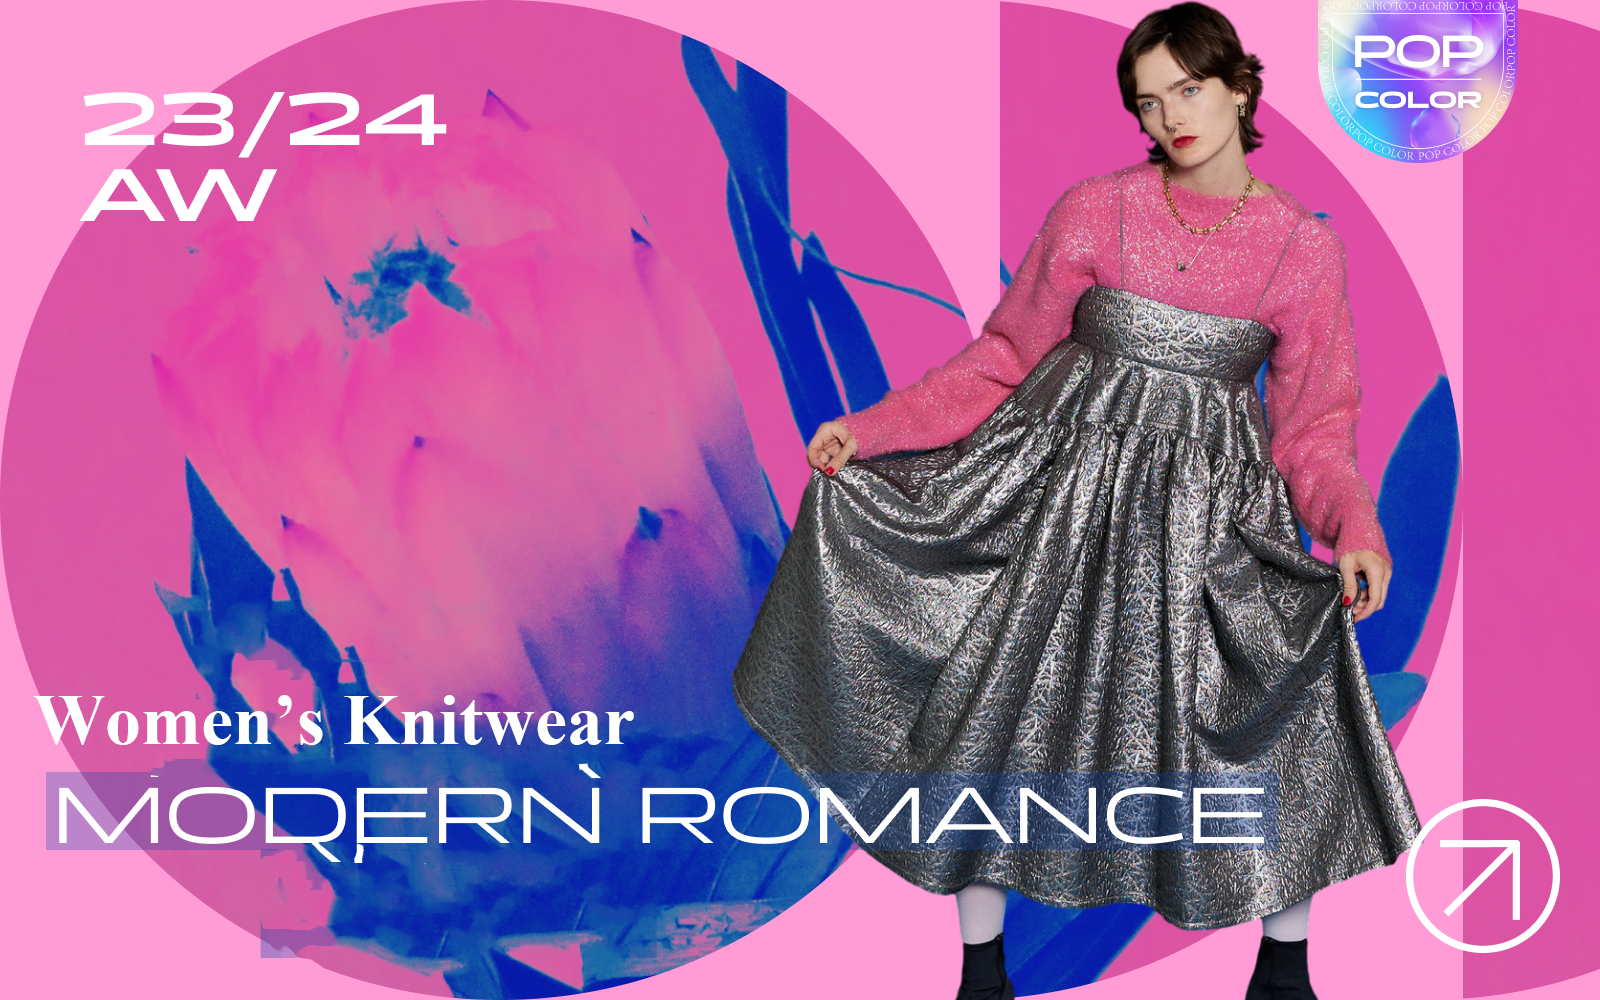 Modern Romance -- A/W 23/24 Color Trend Verification of Women's Knitwear